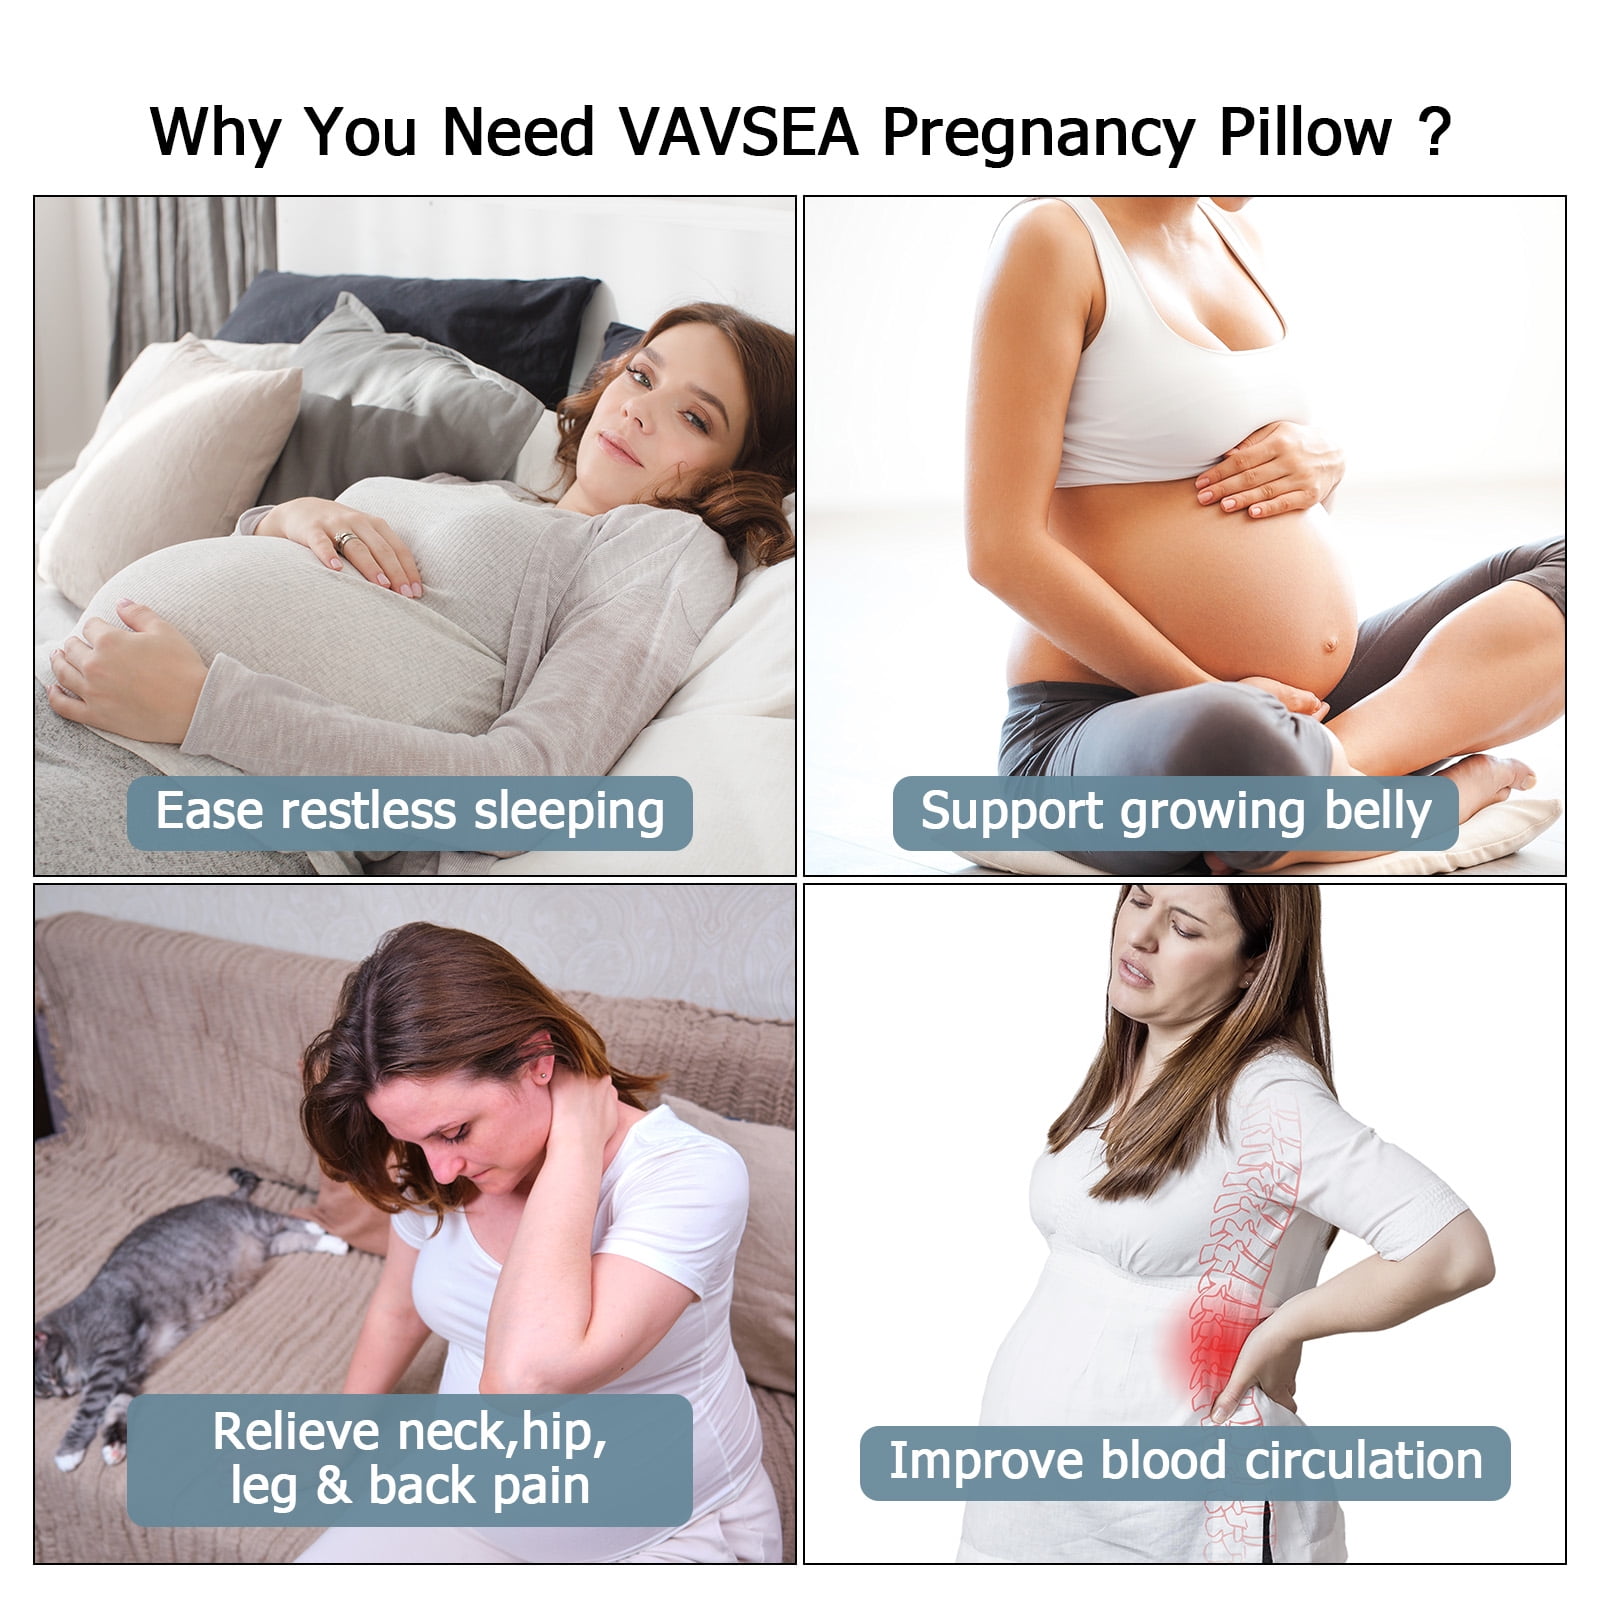 Do You Need a Pregnancy Pillow?